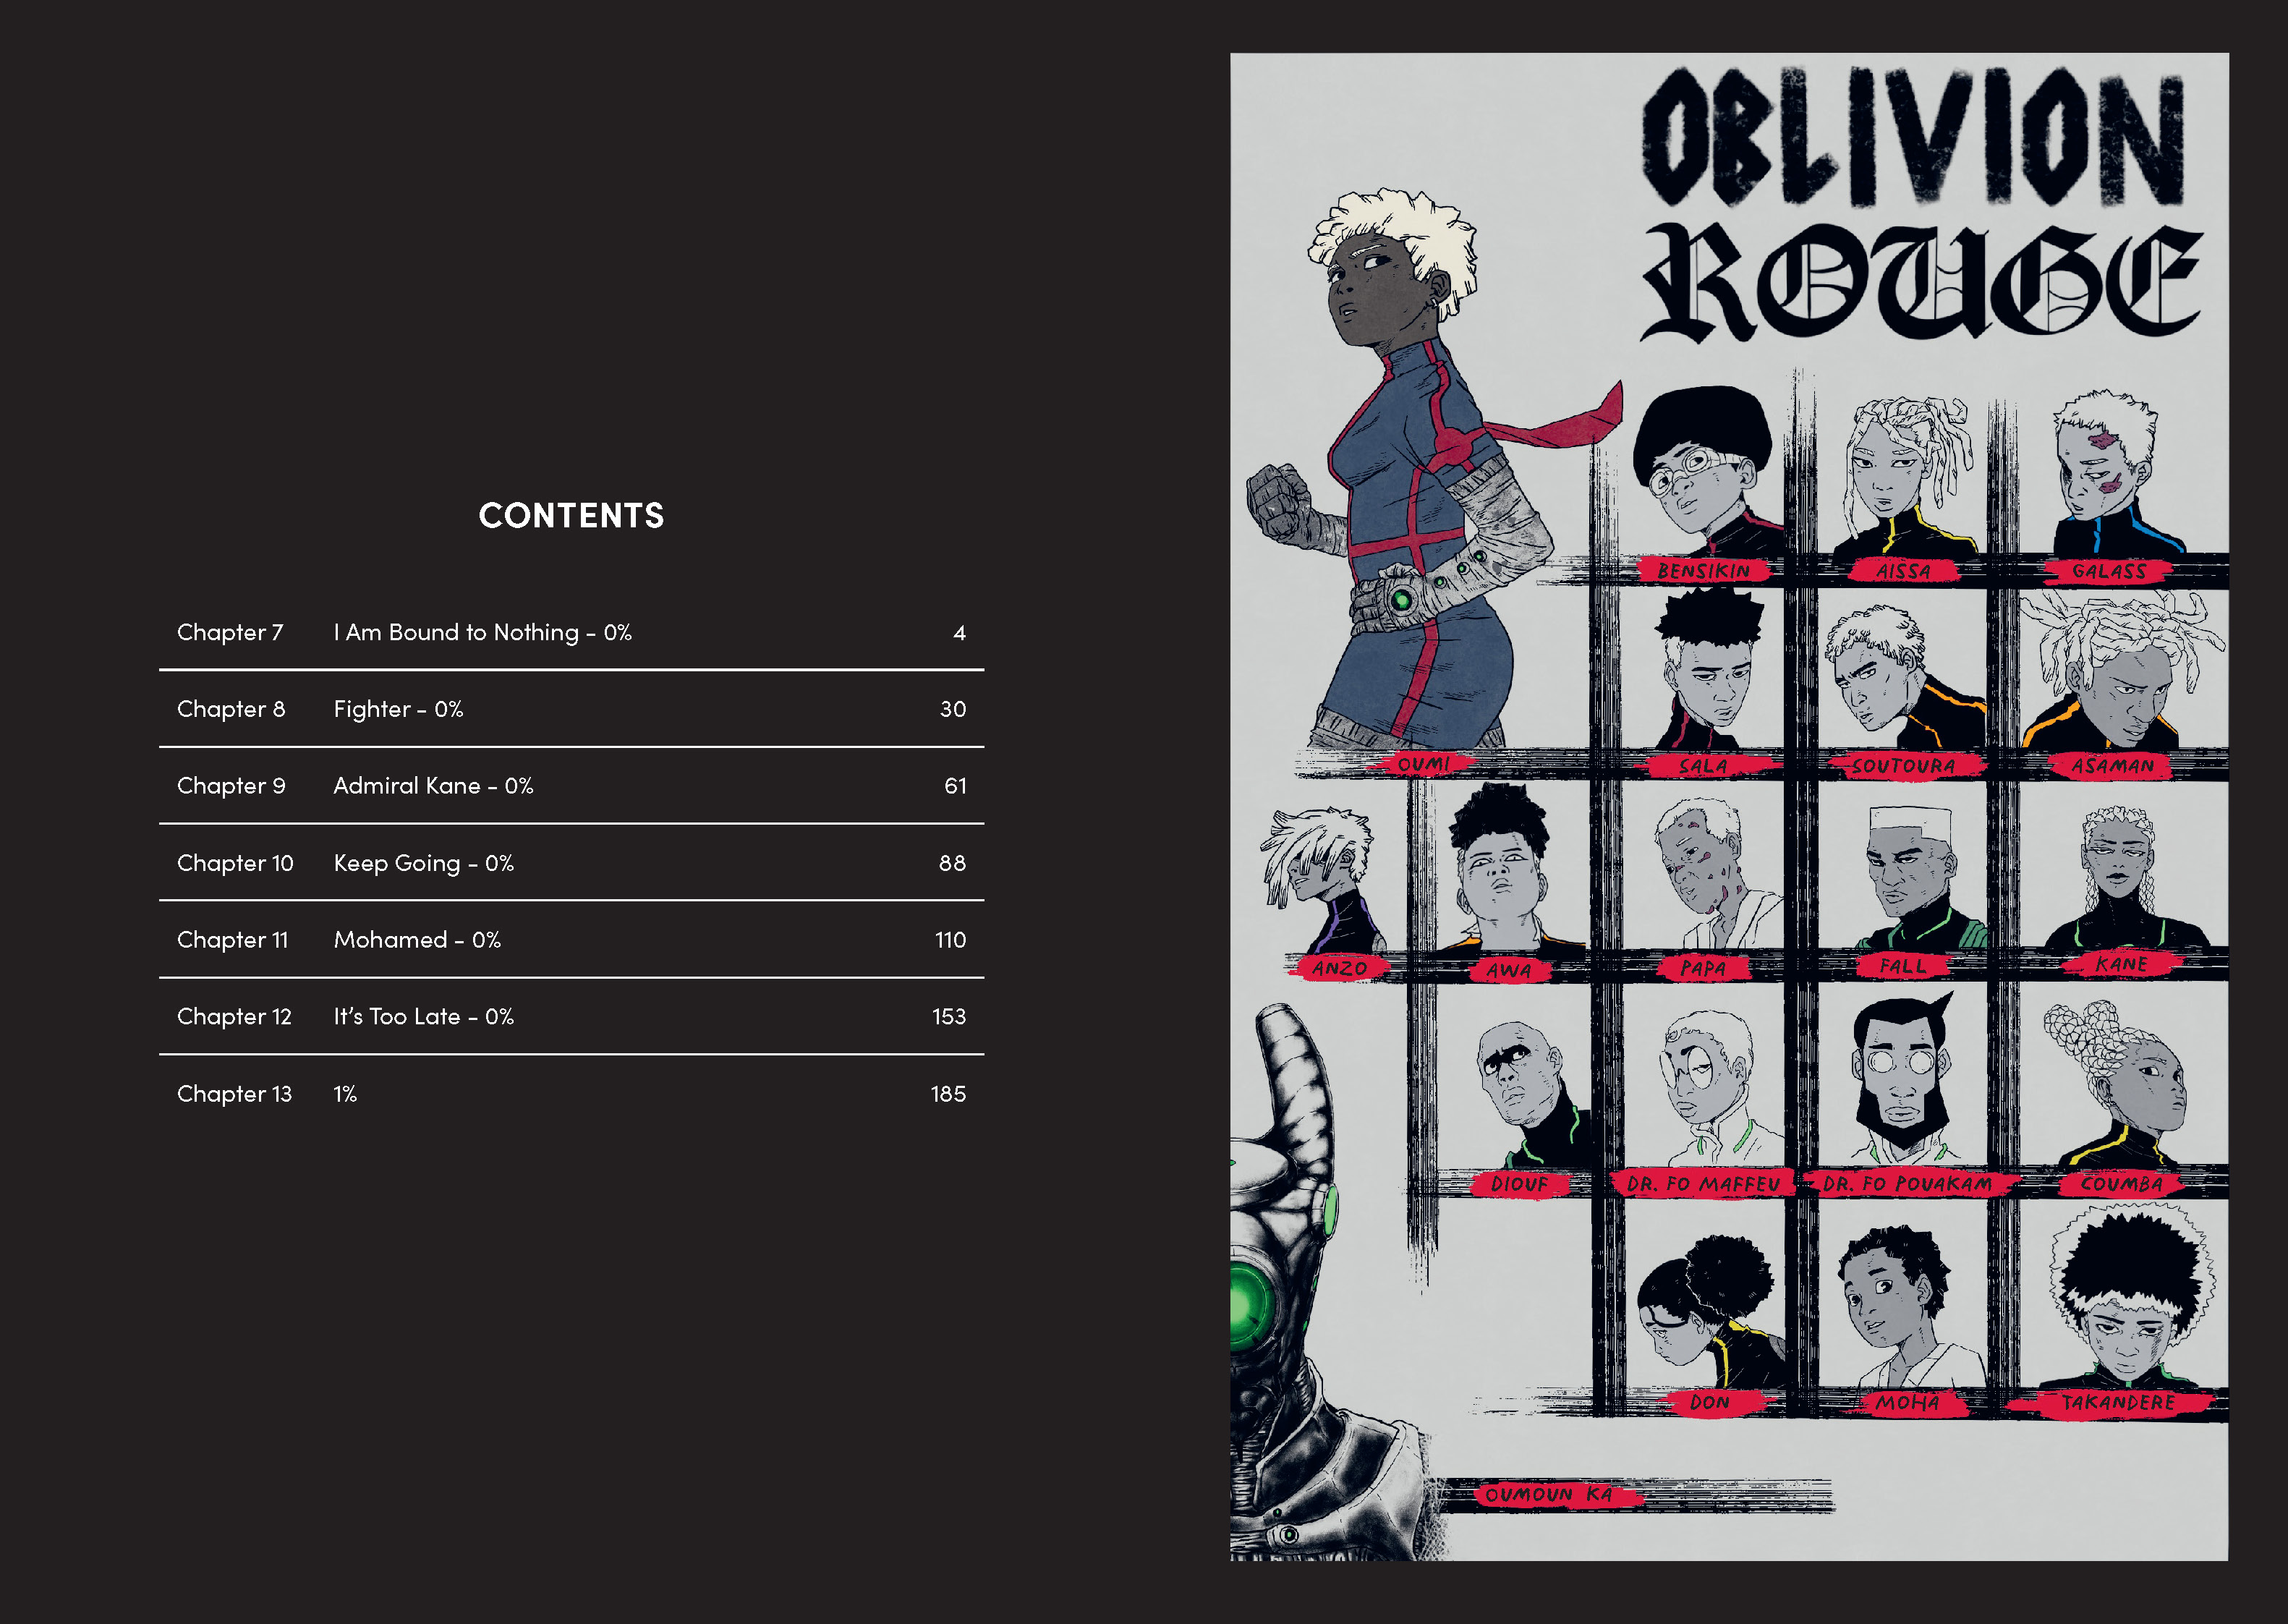 Oblivion Rouge, Volume 2